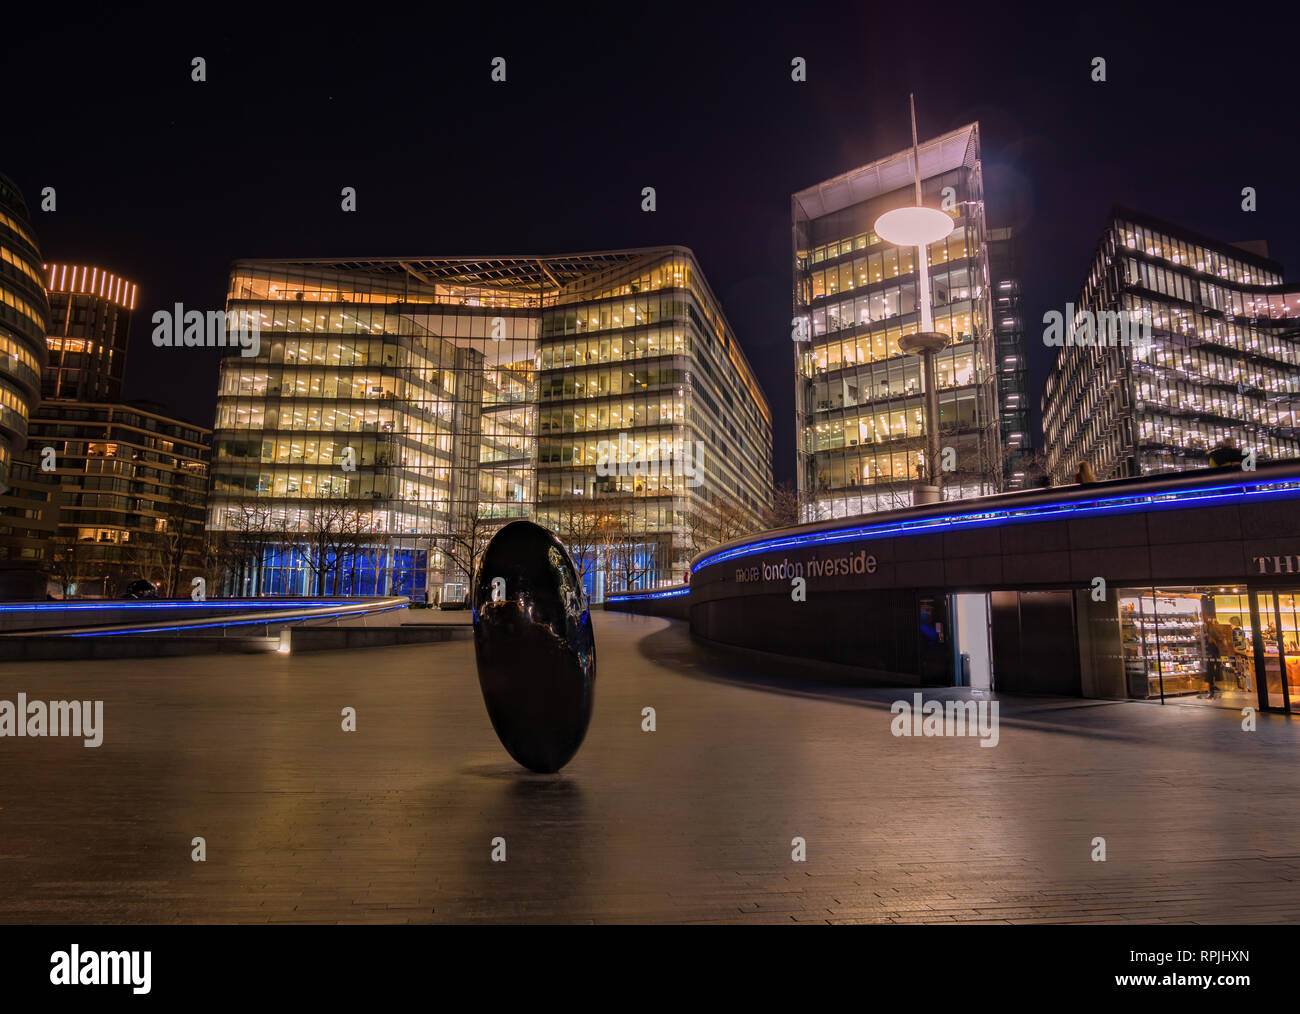 London, England, UK - 21. Februar 2019: Ei form Symbol auf dem Platz von mehr London Riverside in der Nacht in der City von London Stockfoto